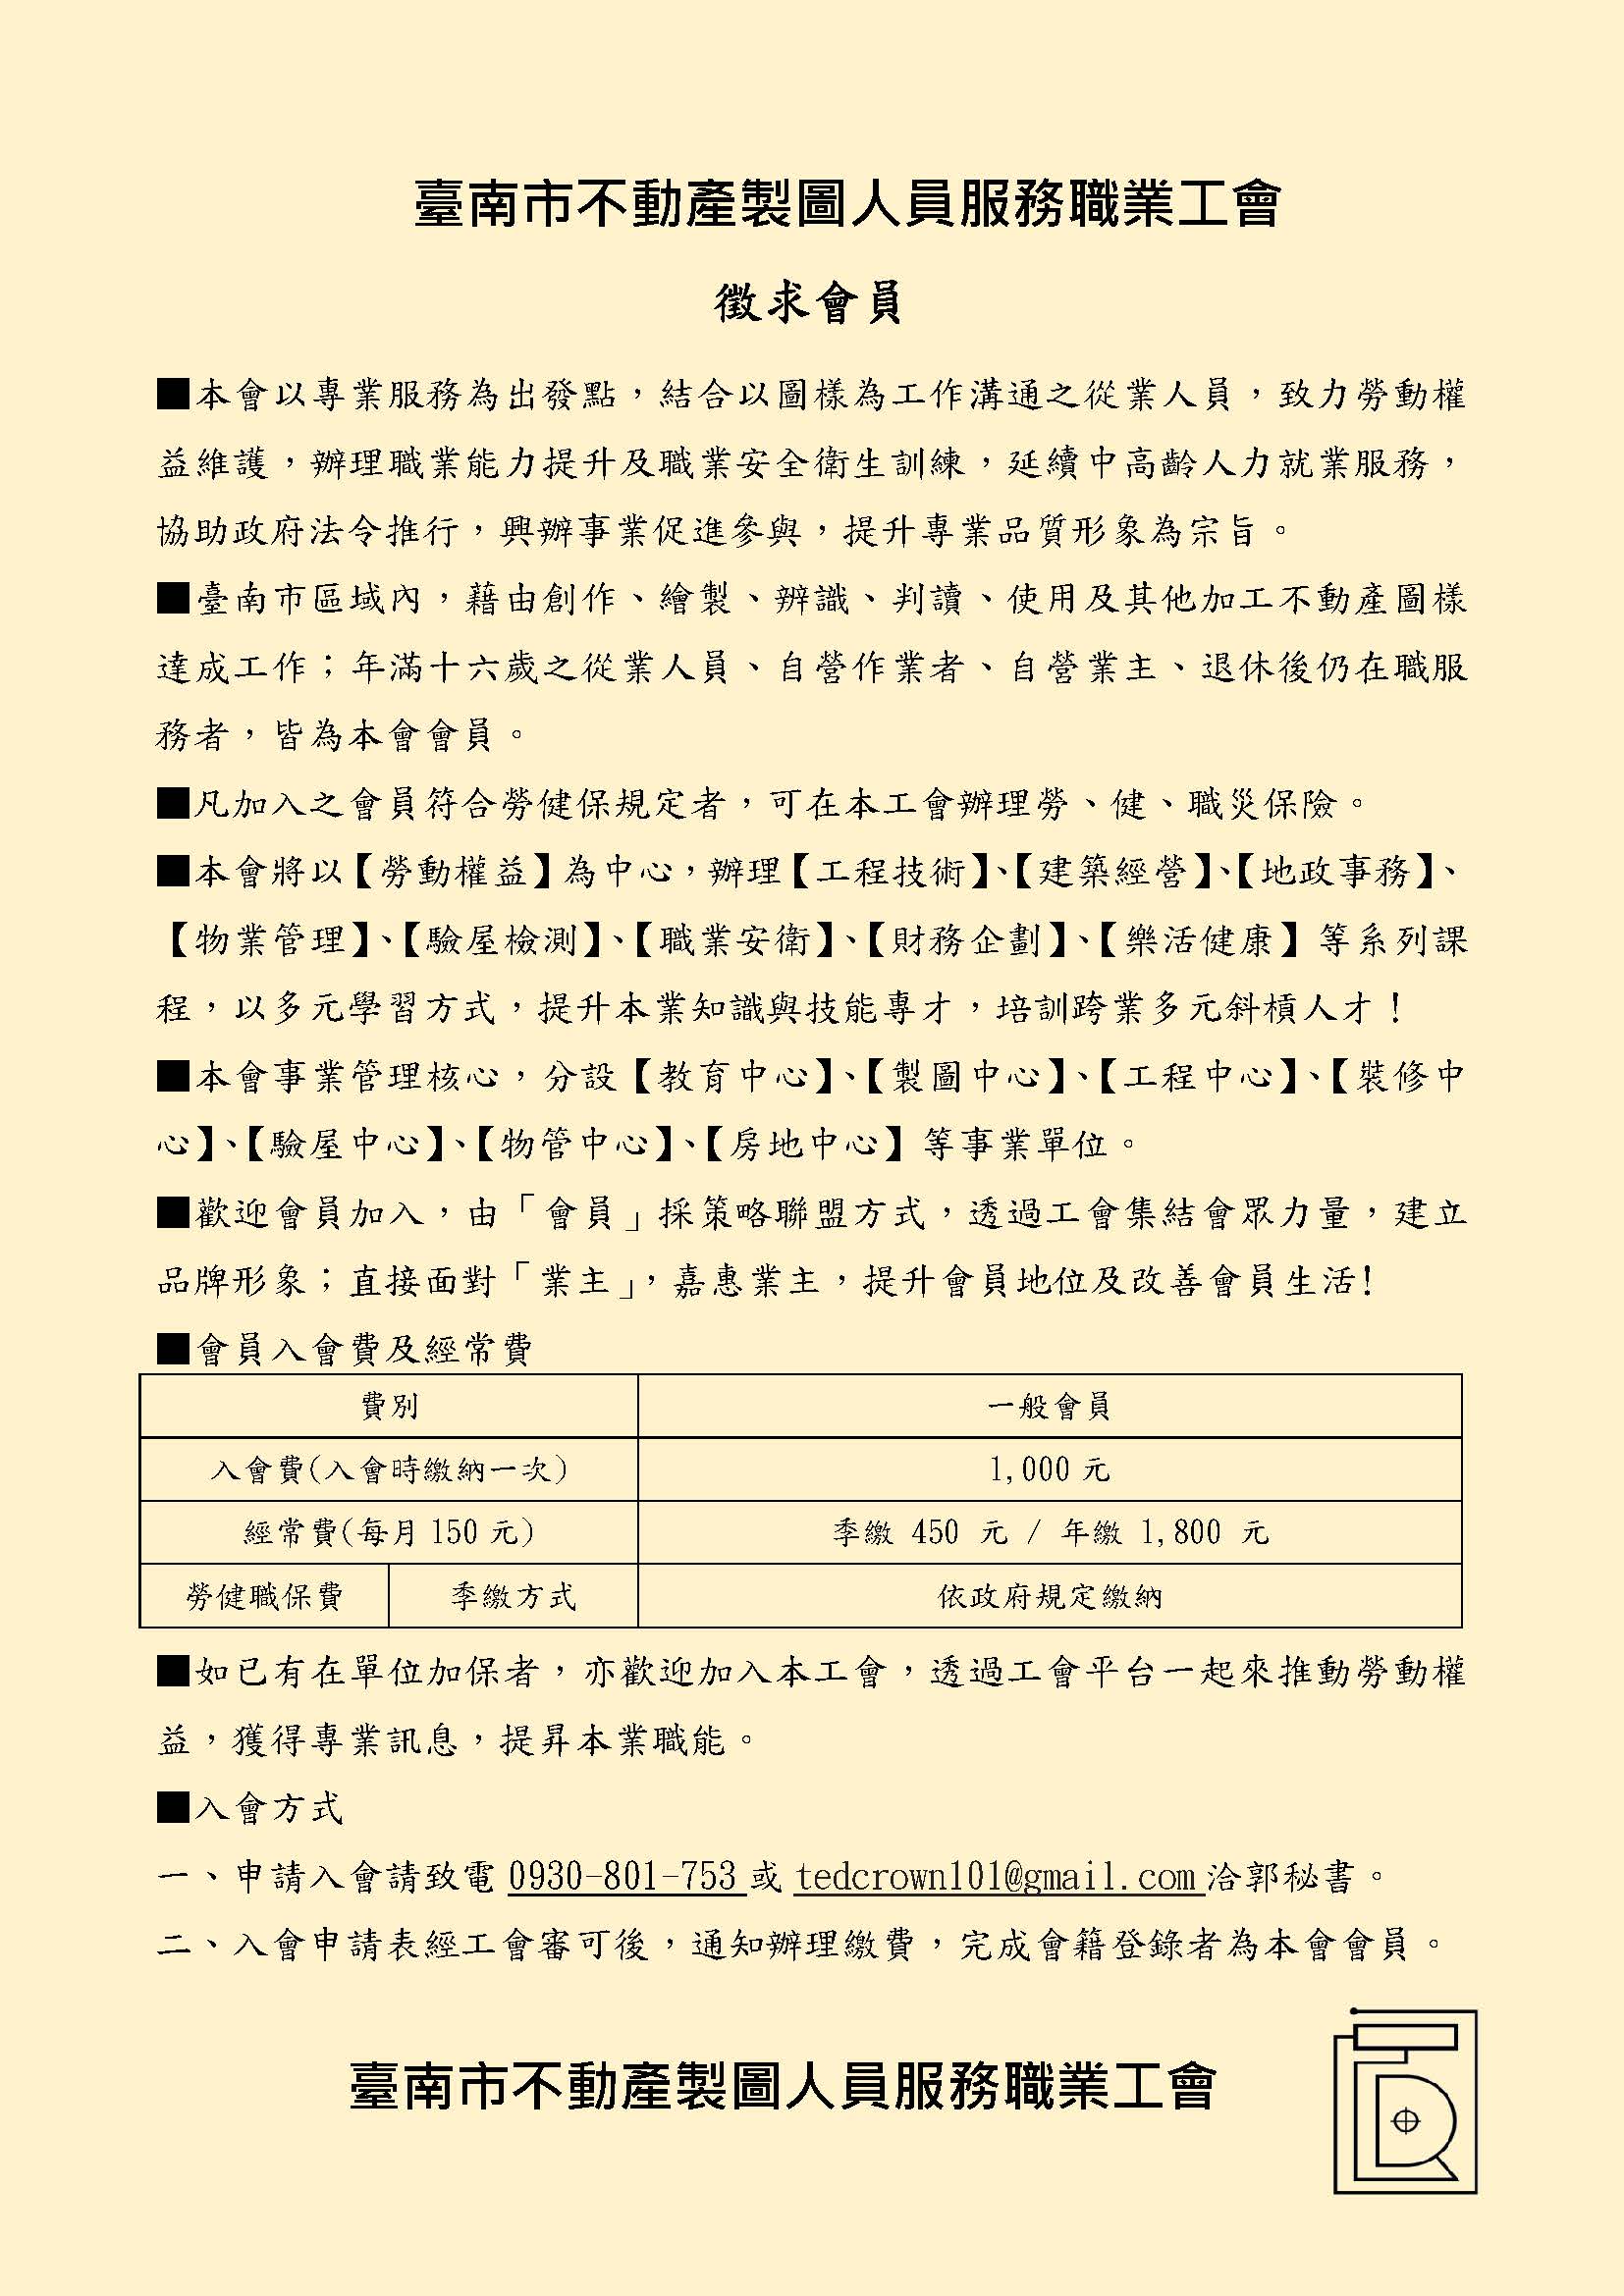 臺南市不動產製圖人員服務職業工會徵求會員公告